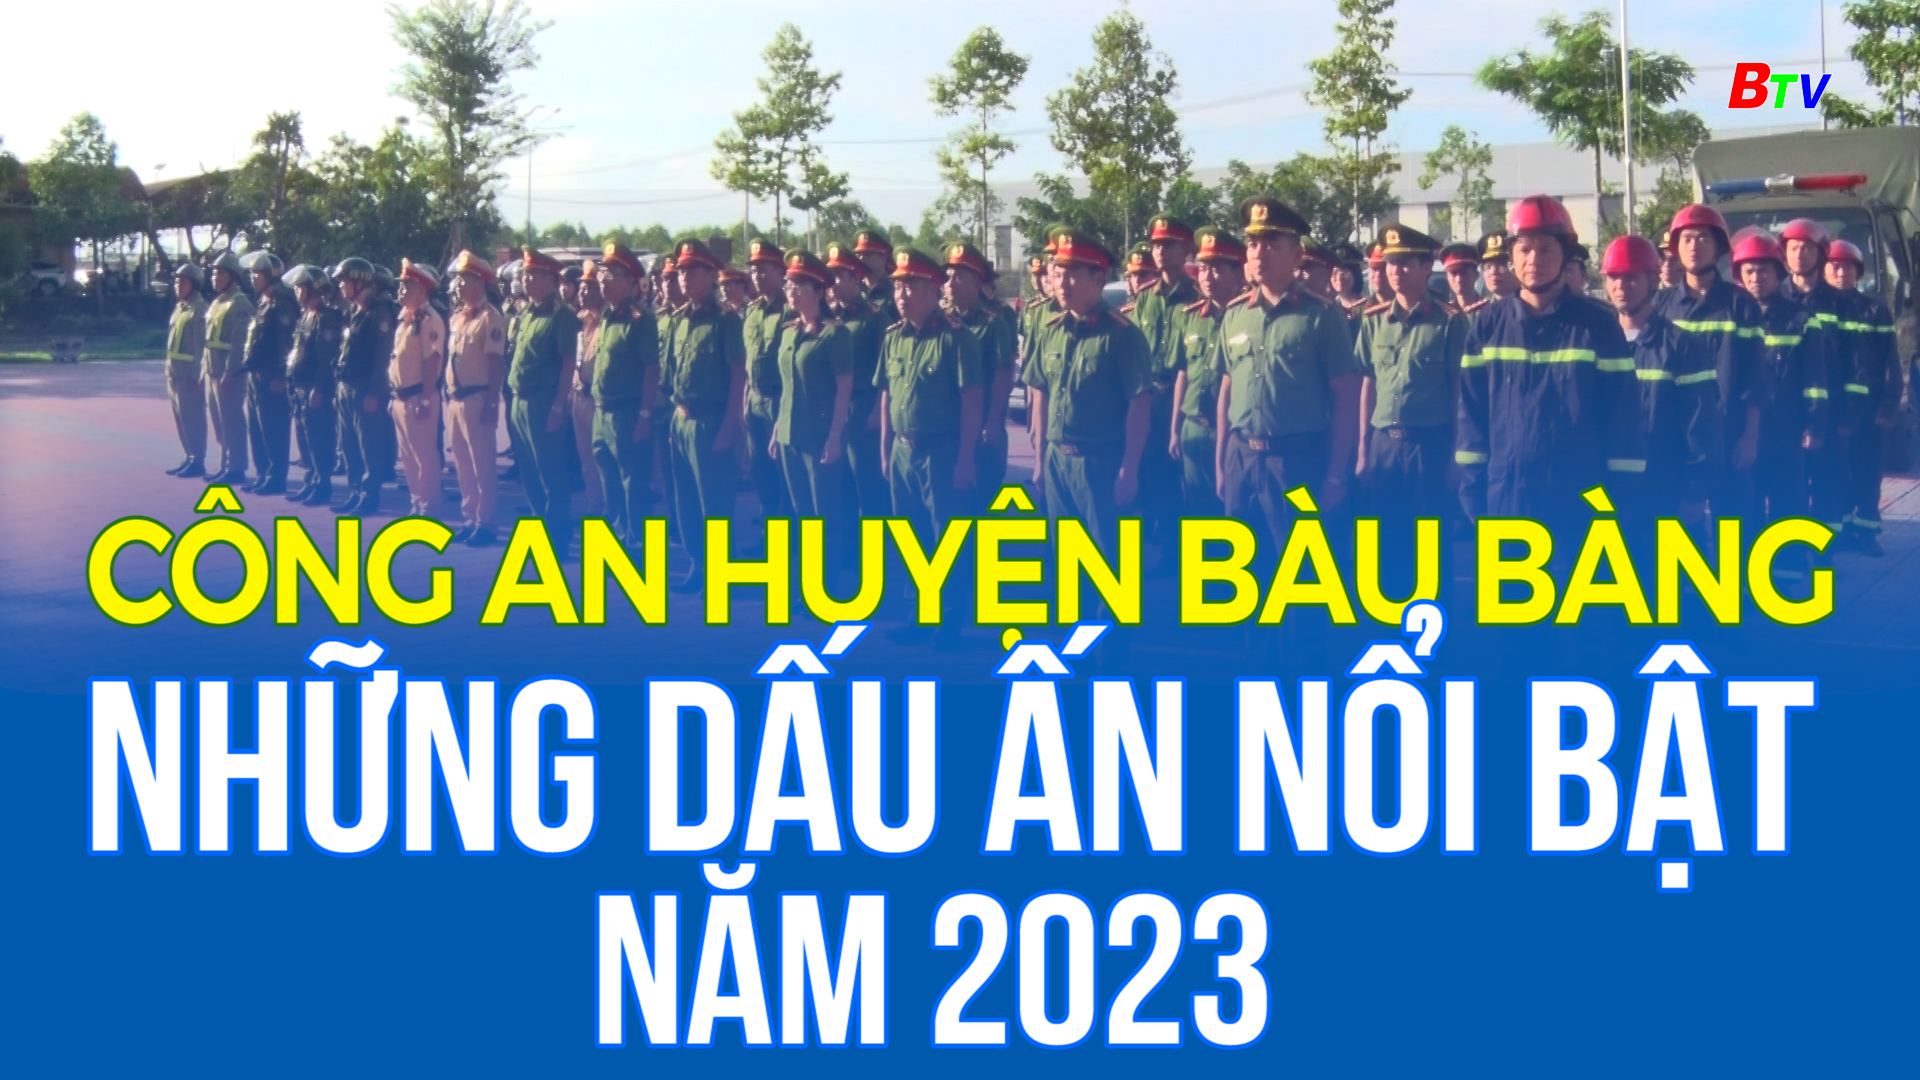 Công an huyện Bàu Bàng - Những dấu ấn nổi bật năm 2023 